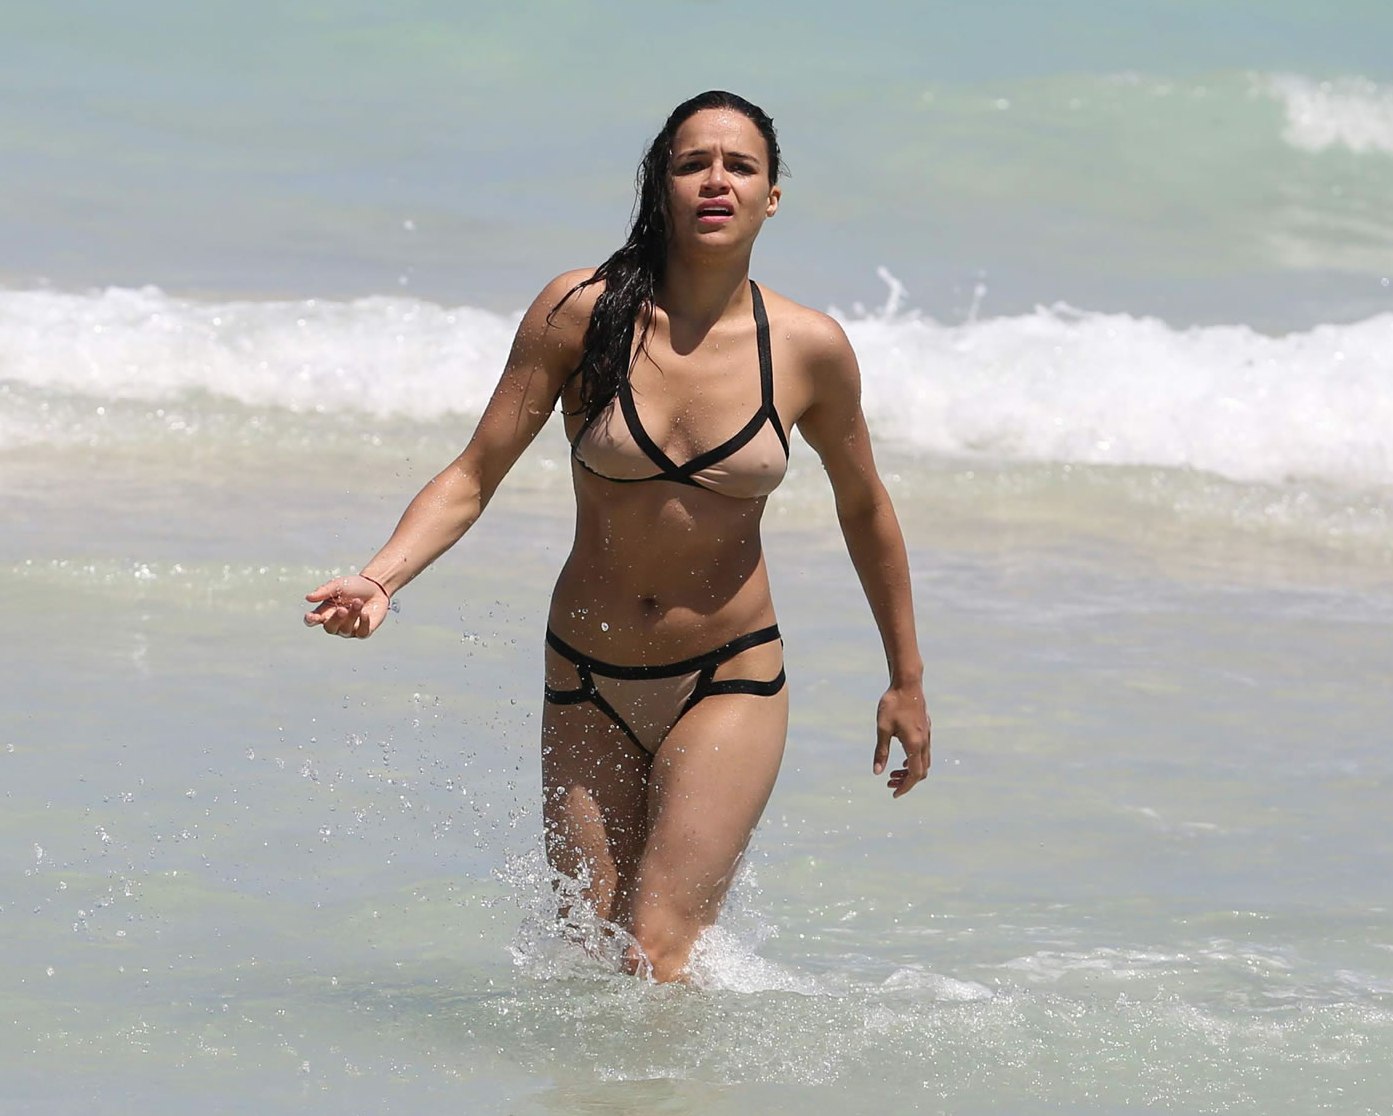 Fast and Furious Michelle Rodriguez’s Oops Nips in Beach Bikini Pics